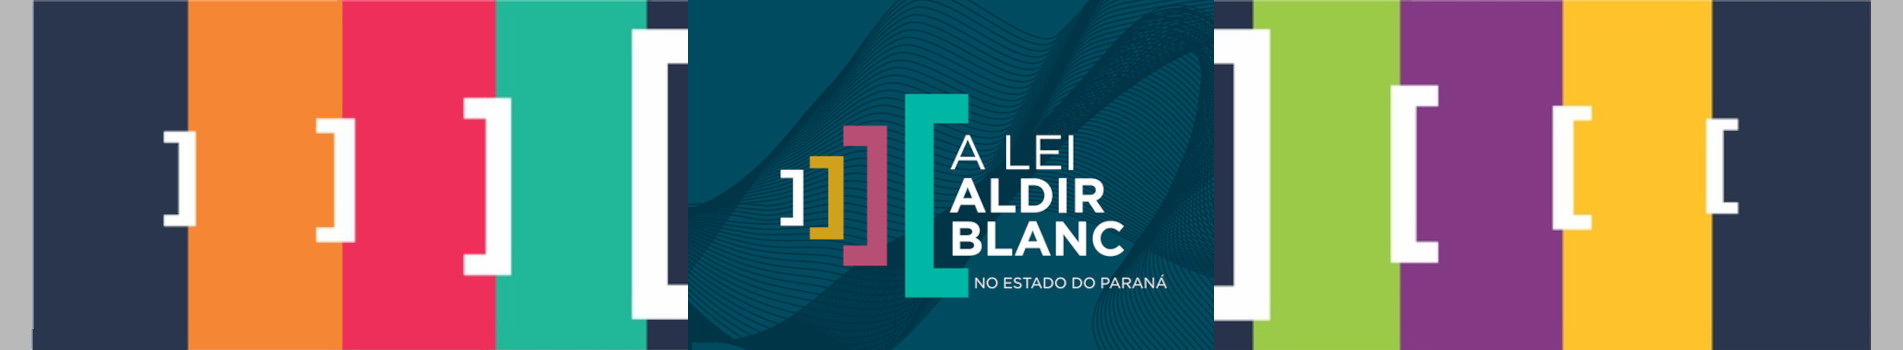 A Lei Aldir Blanc no Estado do Paraná